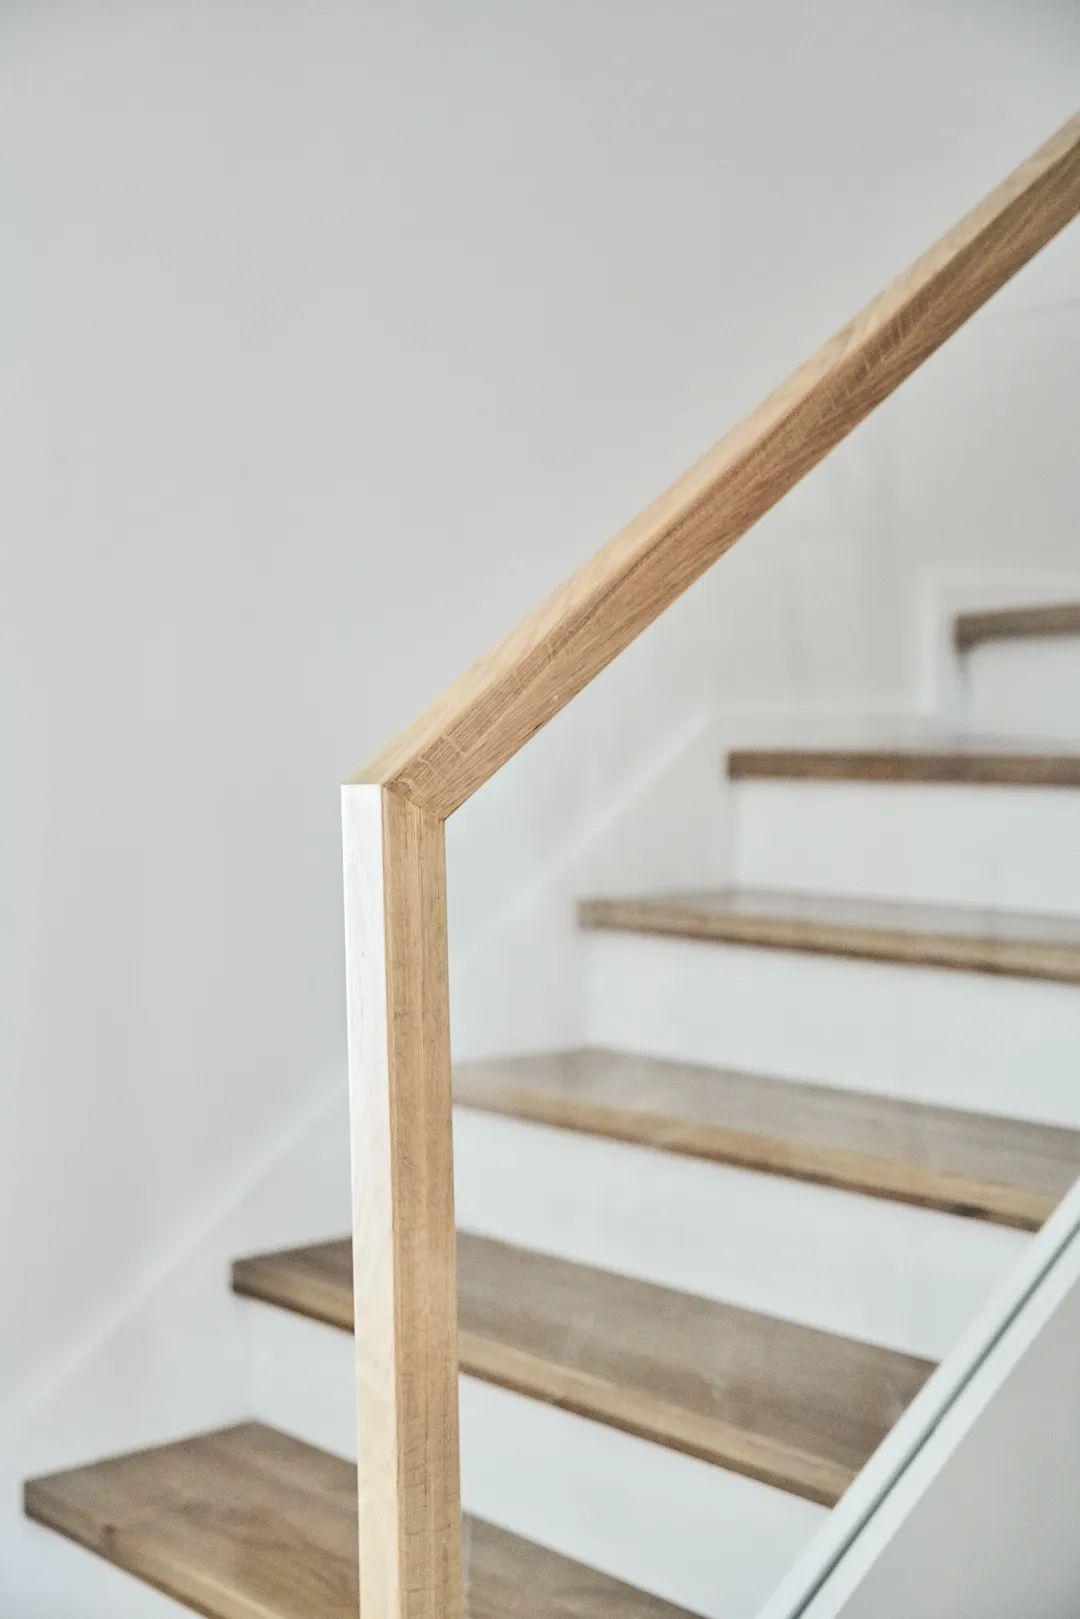 木质踏步 玻璃扶手的设计,让楼梯也是显得时尚而又雅致 二楼主卧